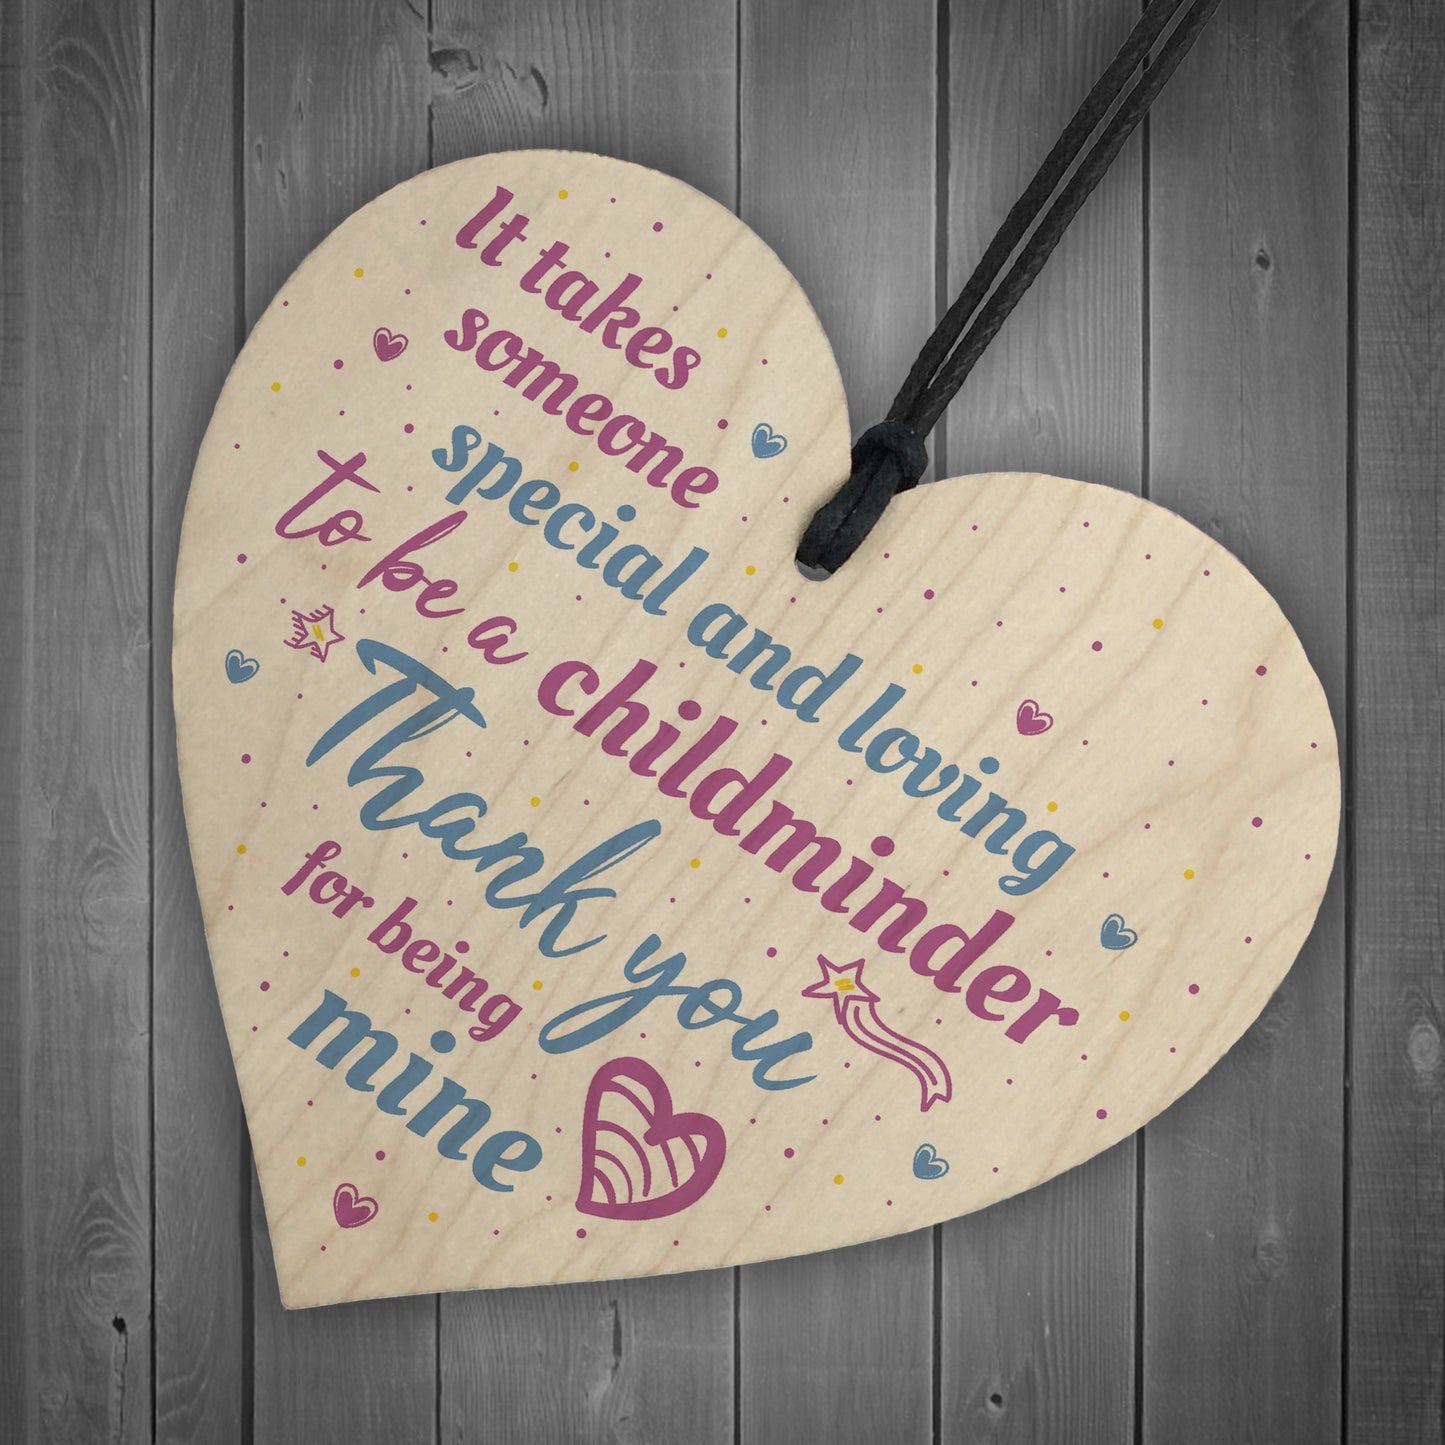 Childminder Gift Handmade Wooden Heart Sign Teacher Nursery Gift